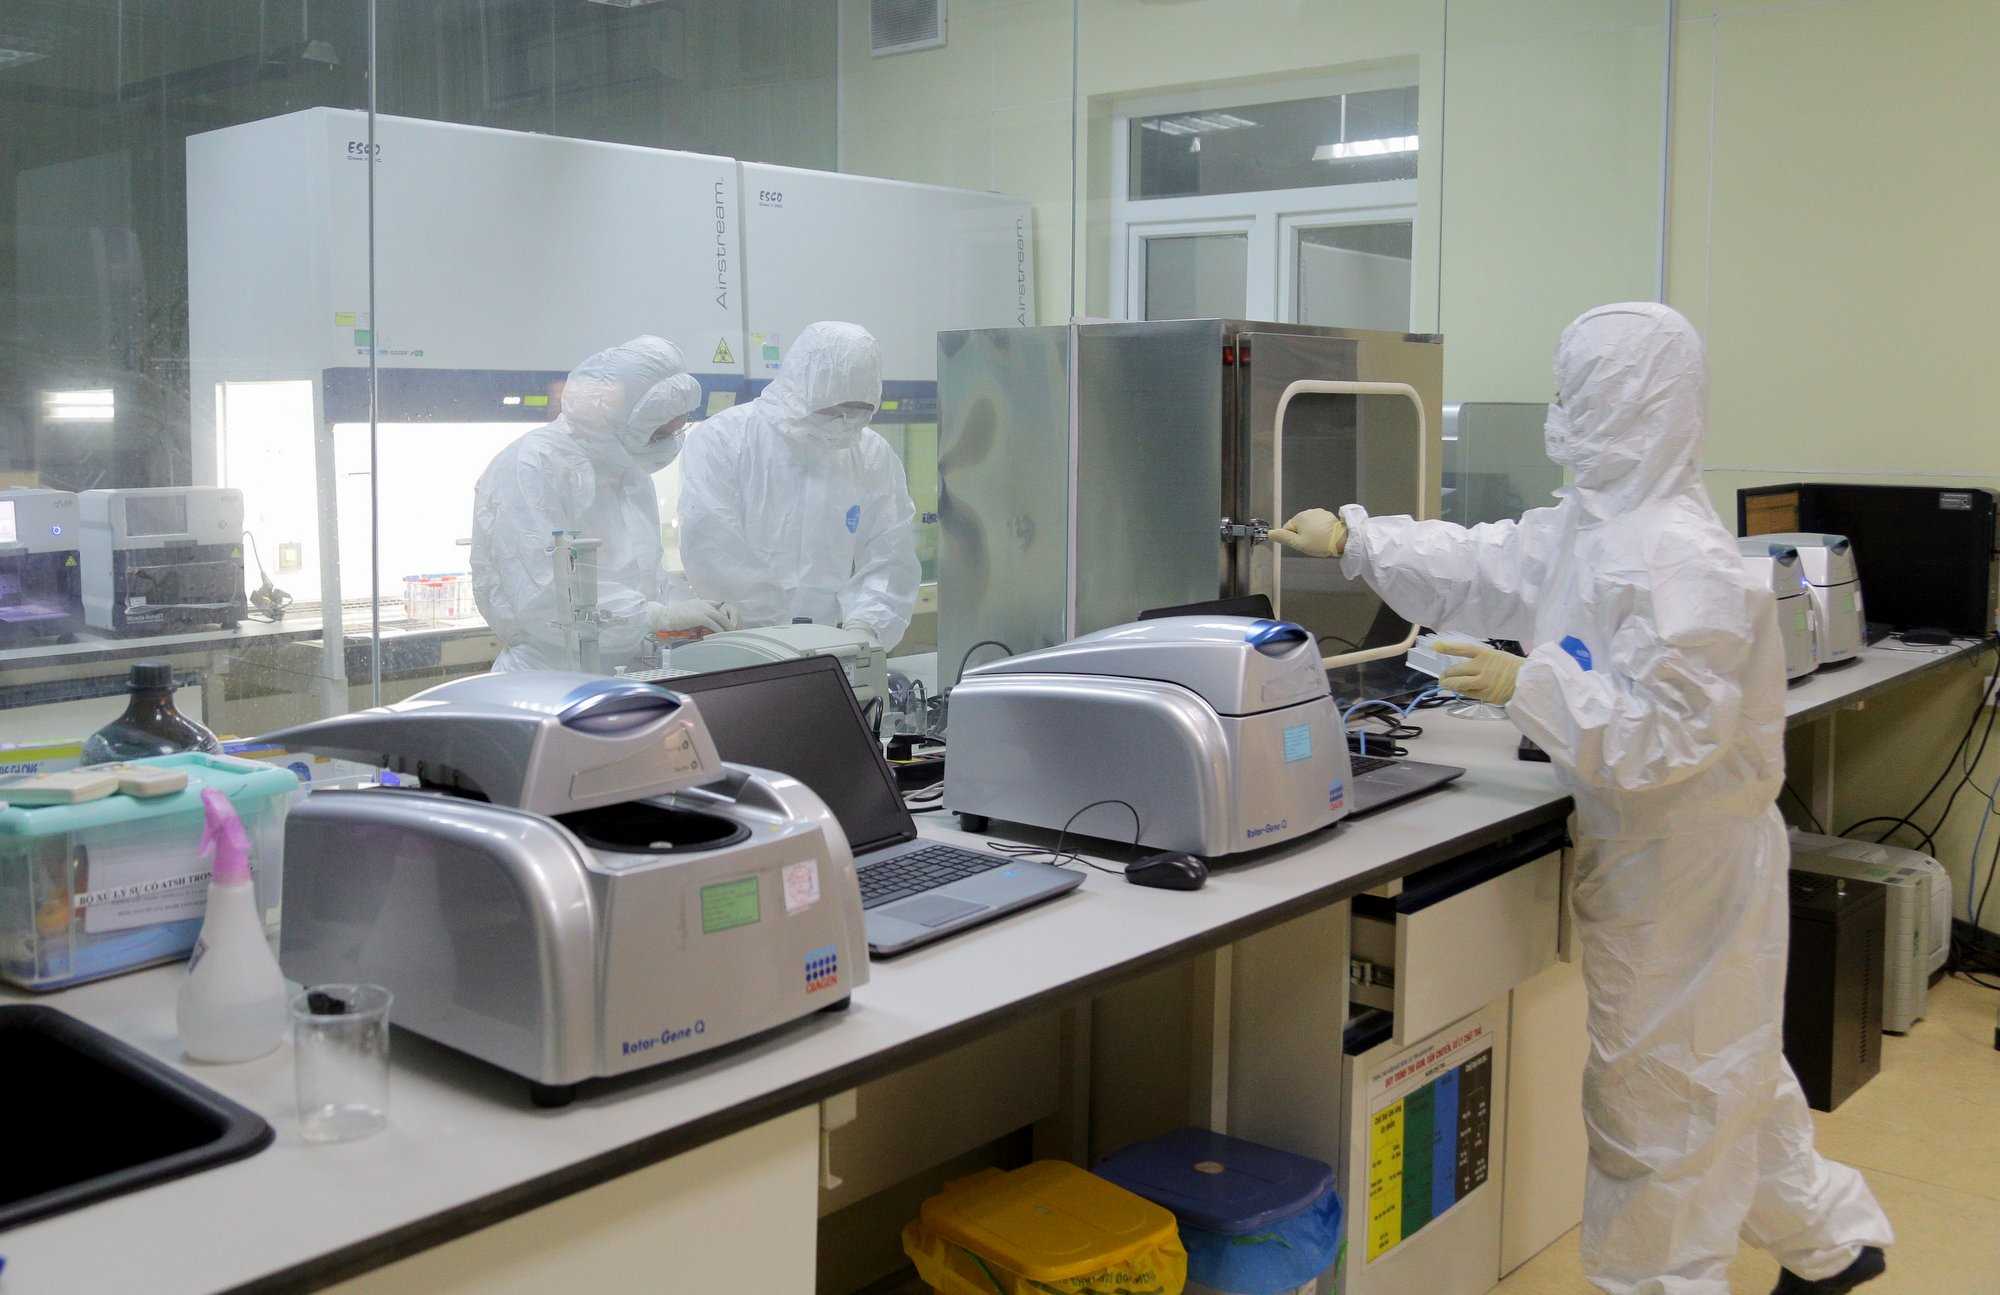 Cán bộ Trung tâm Kiểm soát bệnh tật tỉnh xét nghiệm các mẫu bệnh phẩm ngay trong đêm 27/1. (Ảnh: Cổng thông tin điện tử tỉnh Quang Ninh)